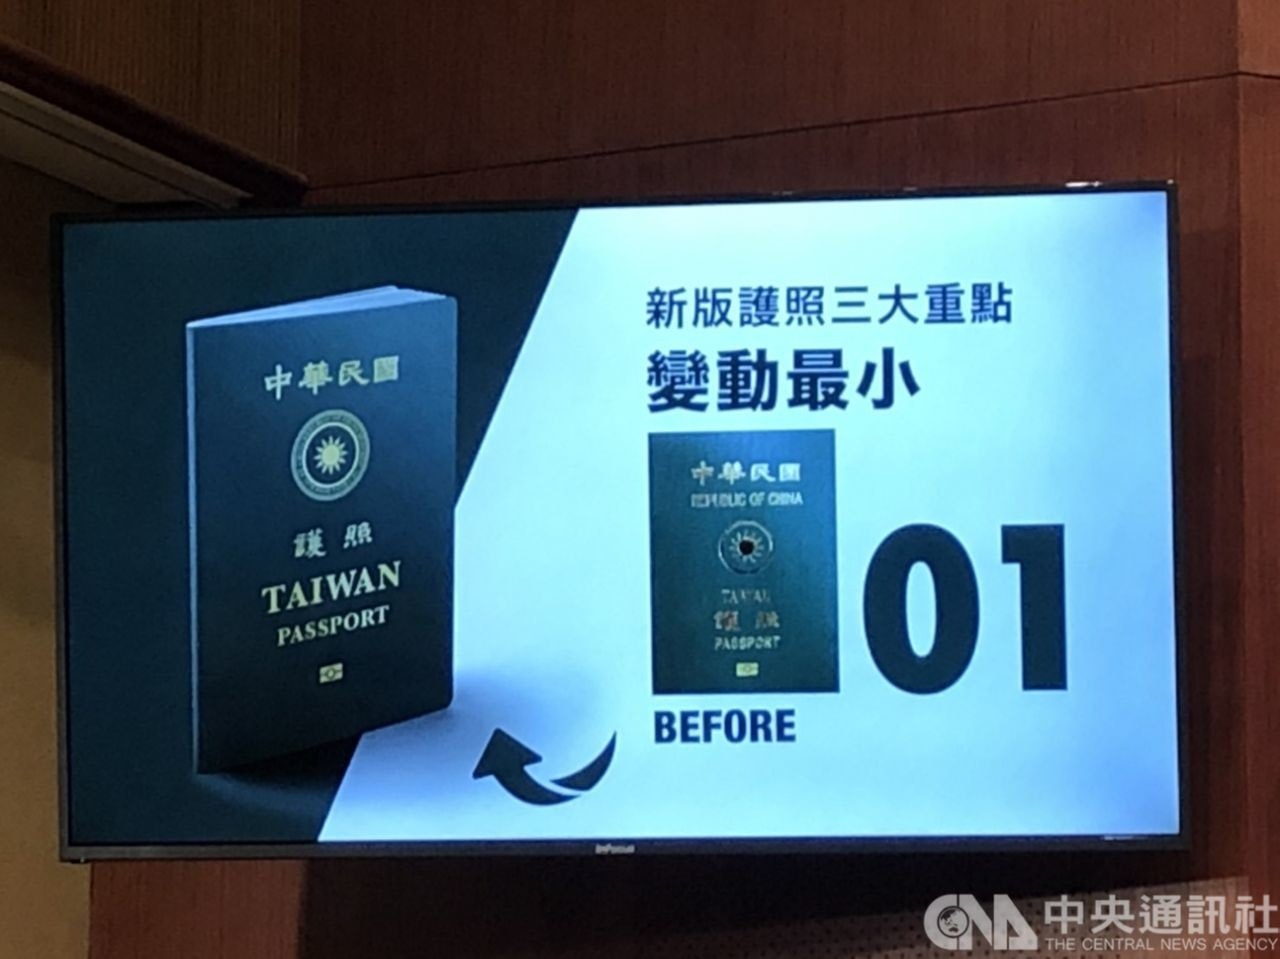 照片中提到了新版護照三大重點、中華民國、變動最小，包含了台灣護照、顯示裝置、電子產品、台灣護照、台灣